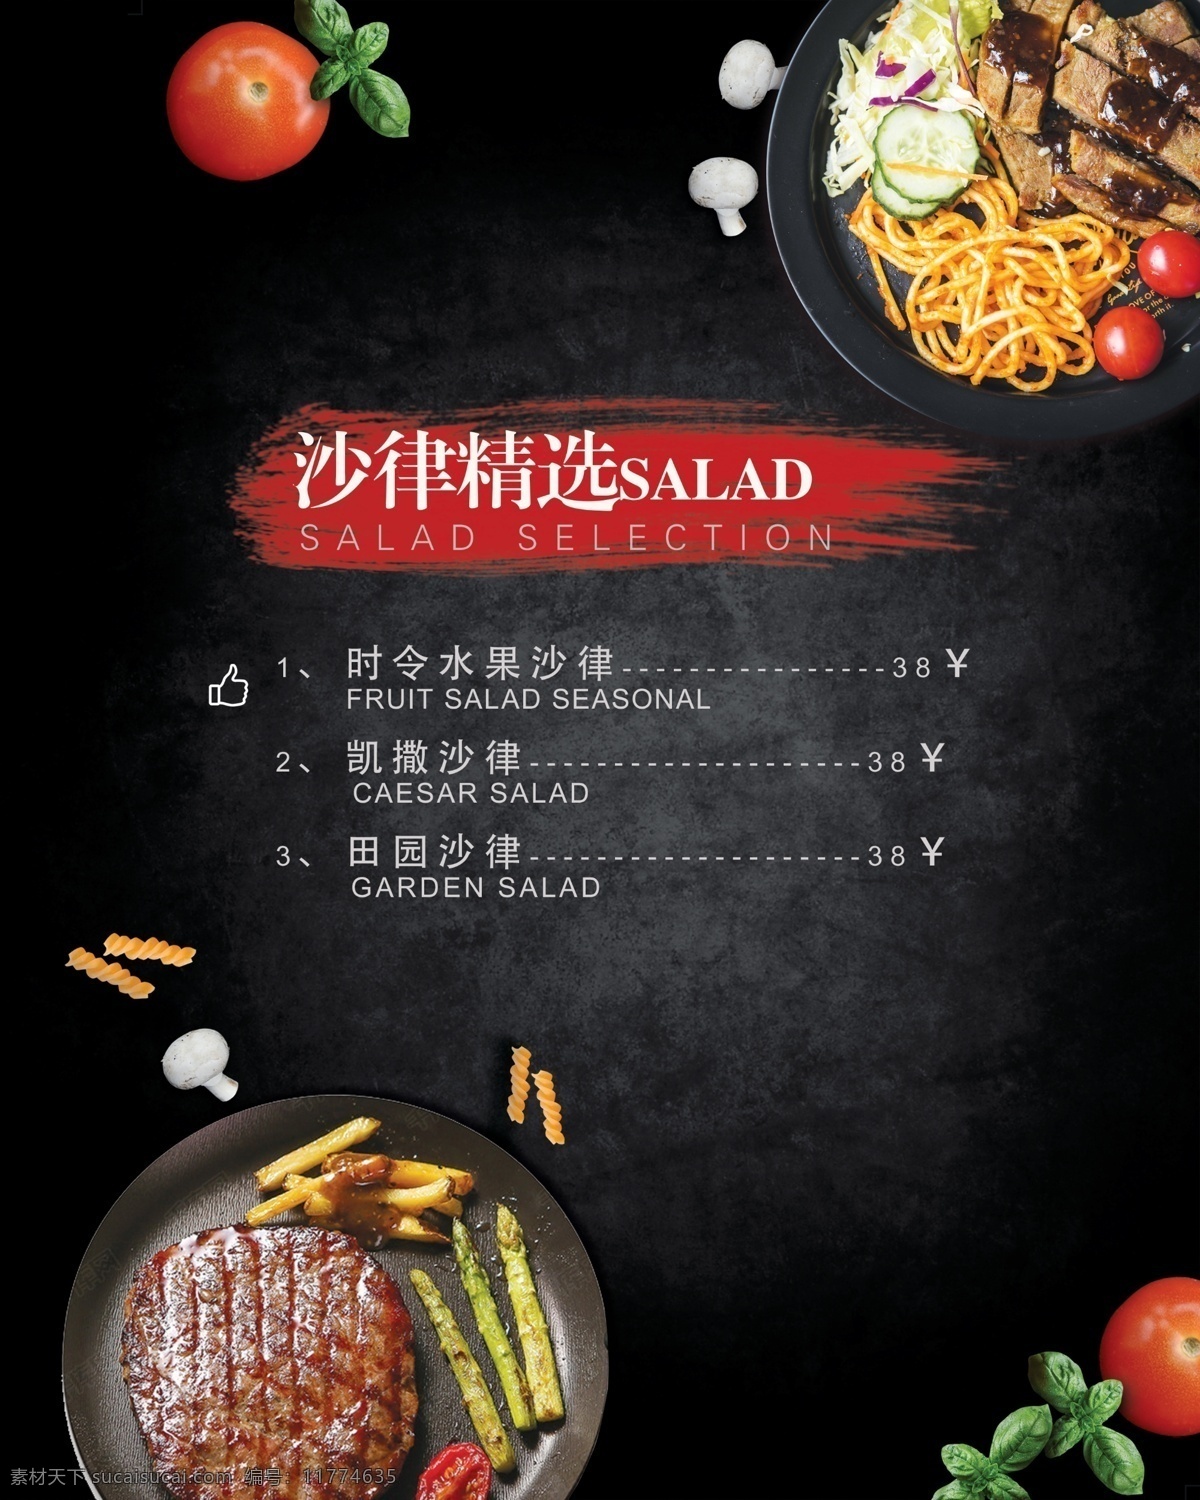 西餐图片 西餐 黑色 牛排 沙拉 菜单 意面 生活百科 餐饮美食